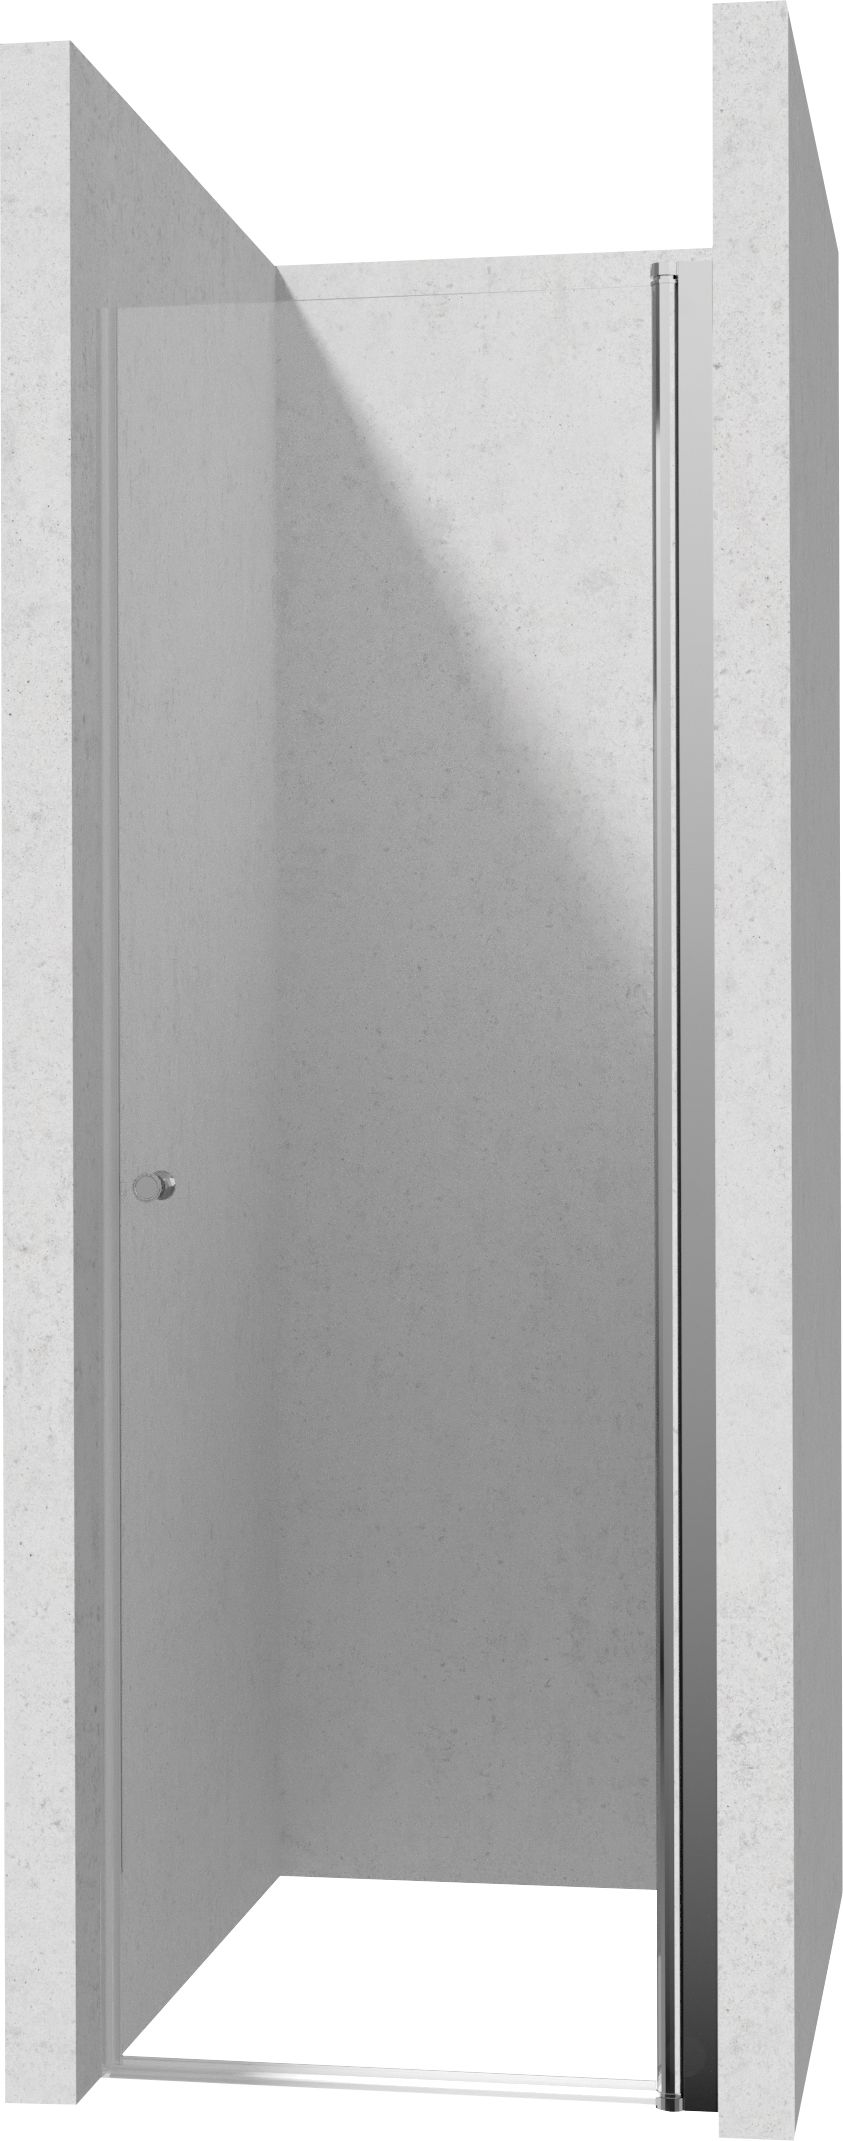 Drzwi prysznicowe 90 cm - wahadłowe - KTSW041P - Główne zdjęcie produktowe